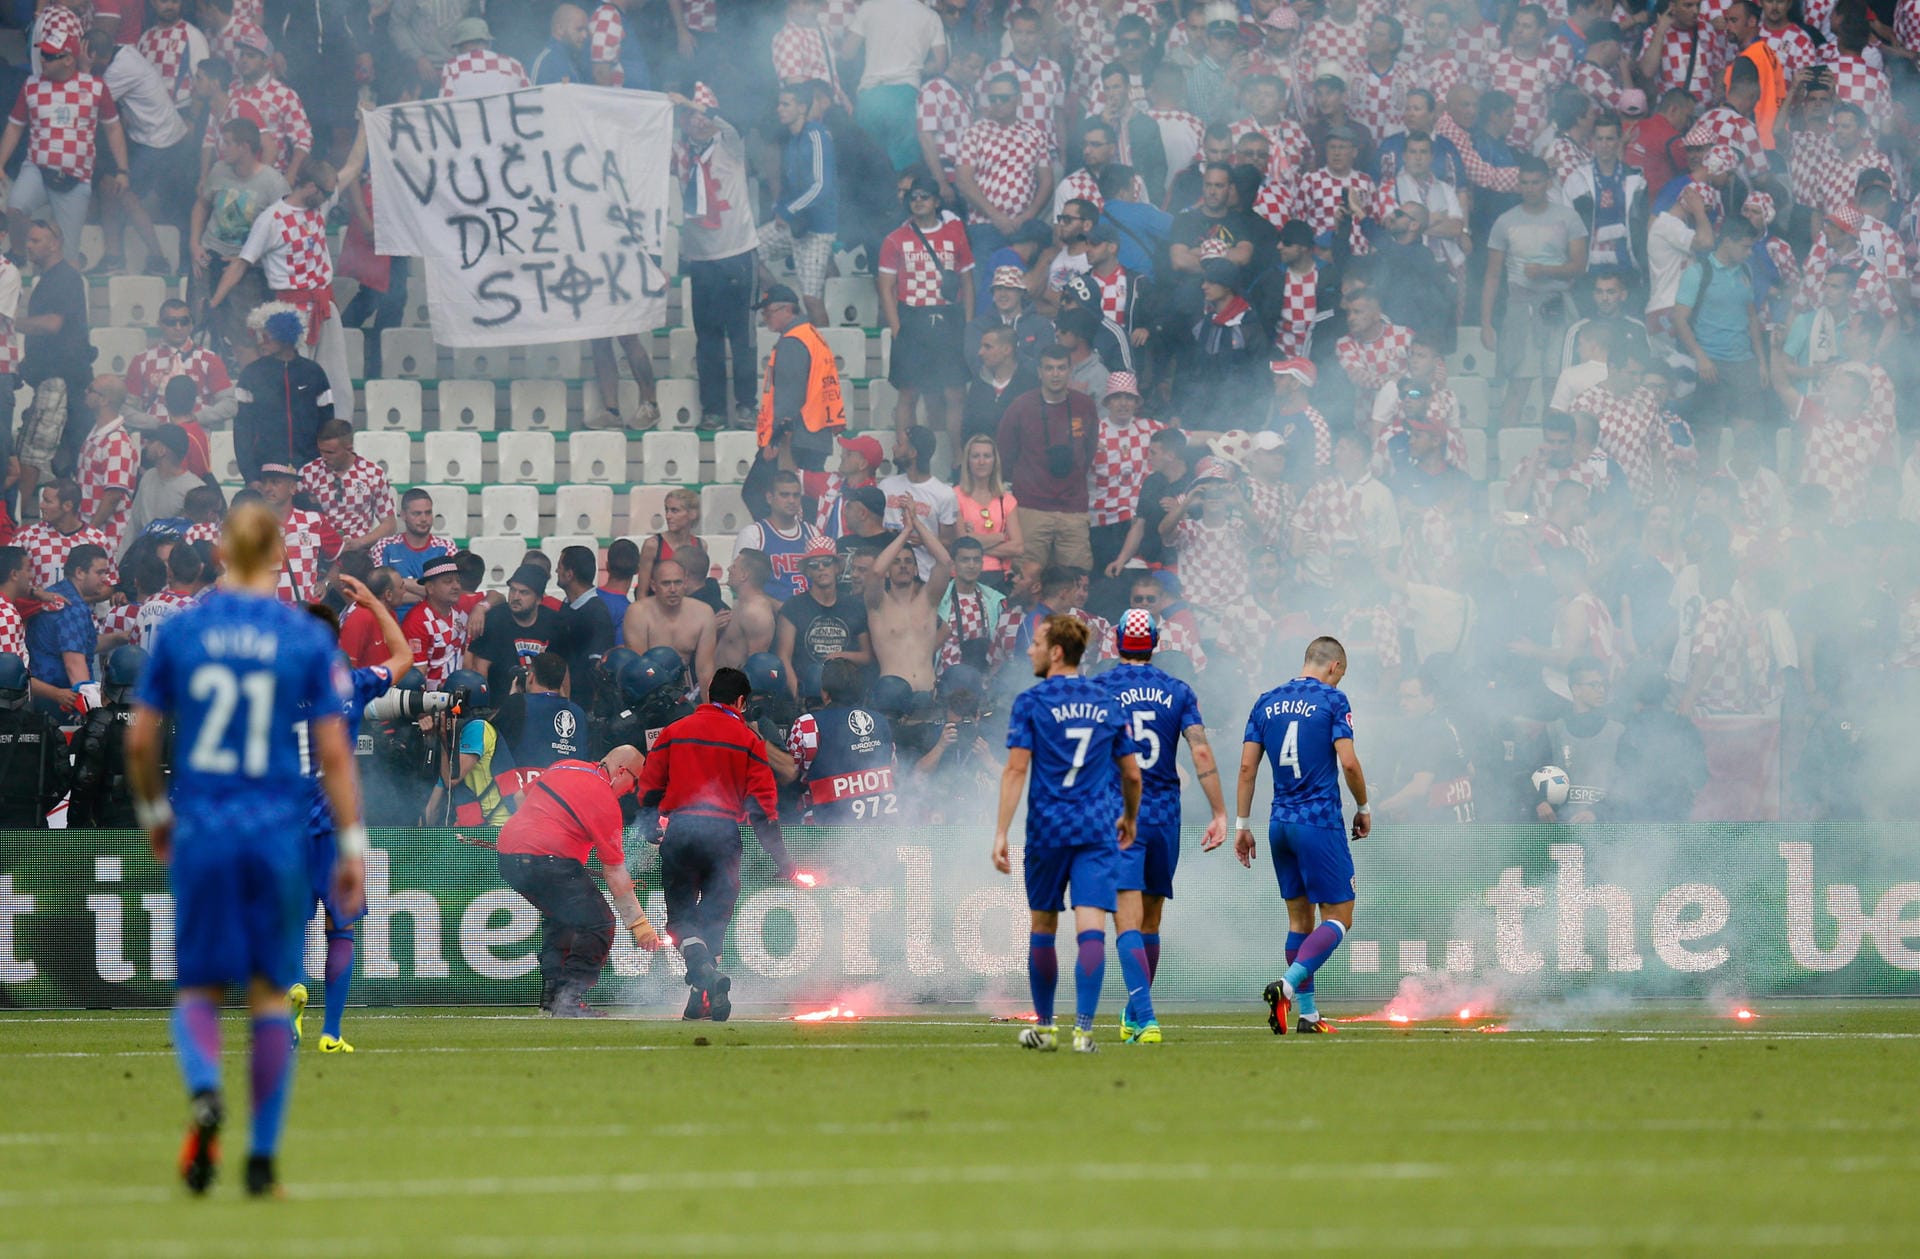 Kurz vor Spielende kommt es zu unschönen Szenen, als kroatische Fans Leuchtraketen und Böller auf das Spielfeld werfen